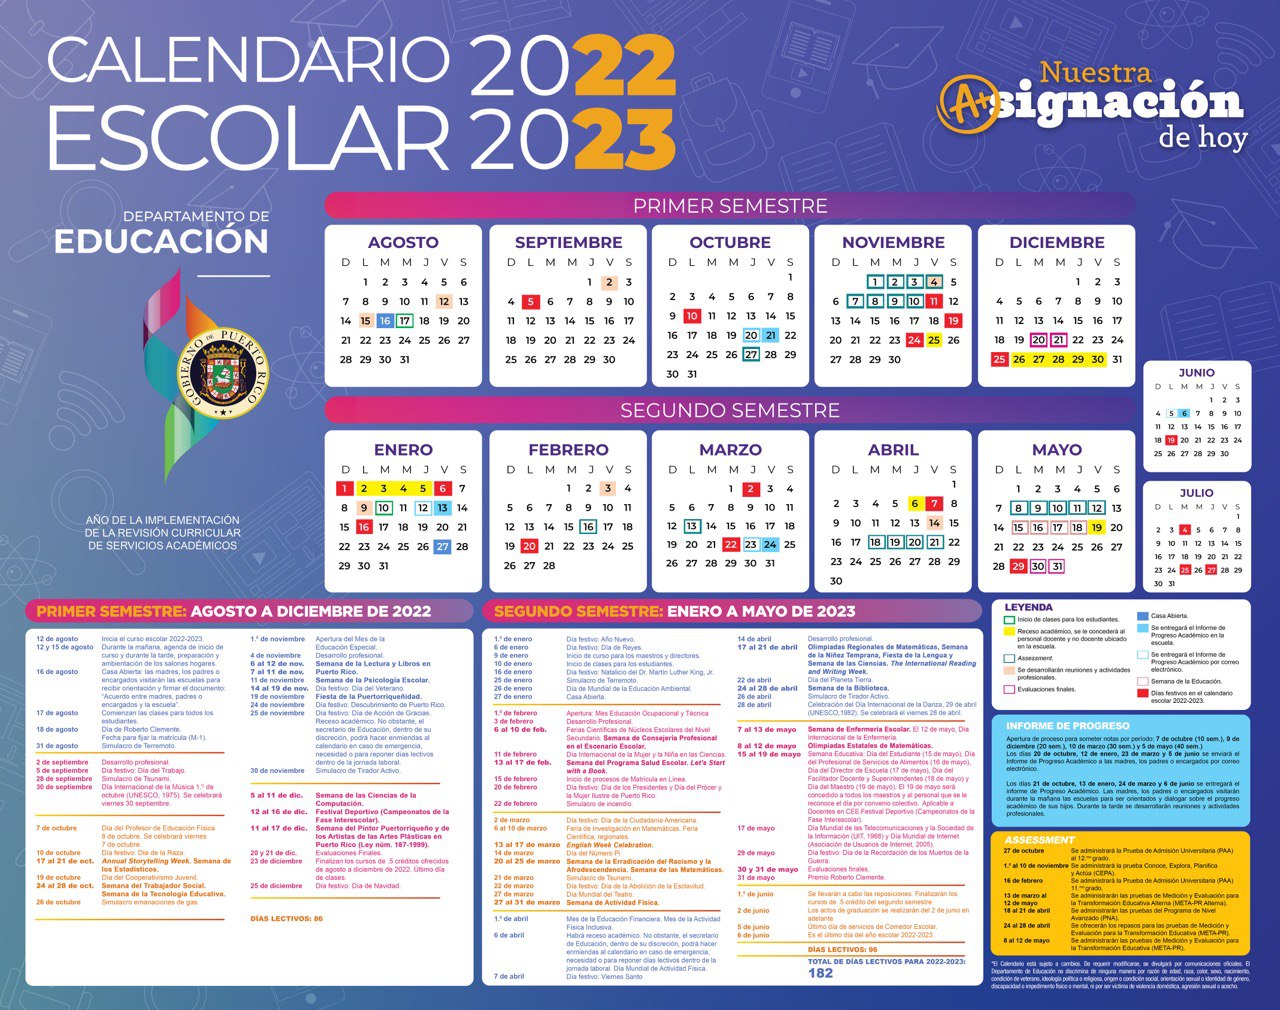 Calendario Escolar 2023 Puerto Rico Get Calendar 2023 Updated Imagesee